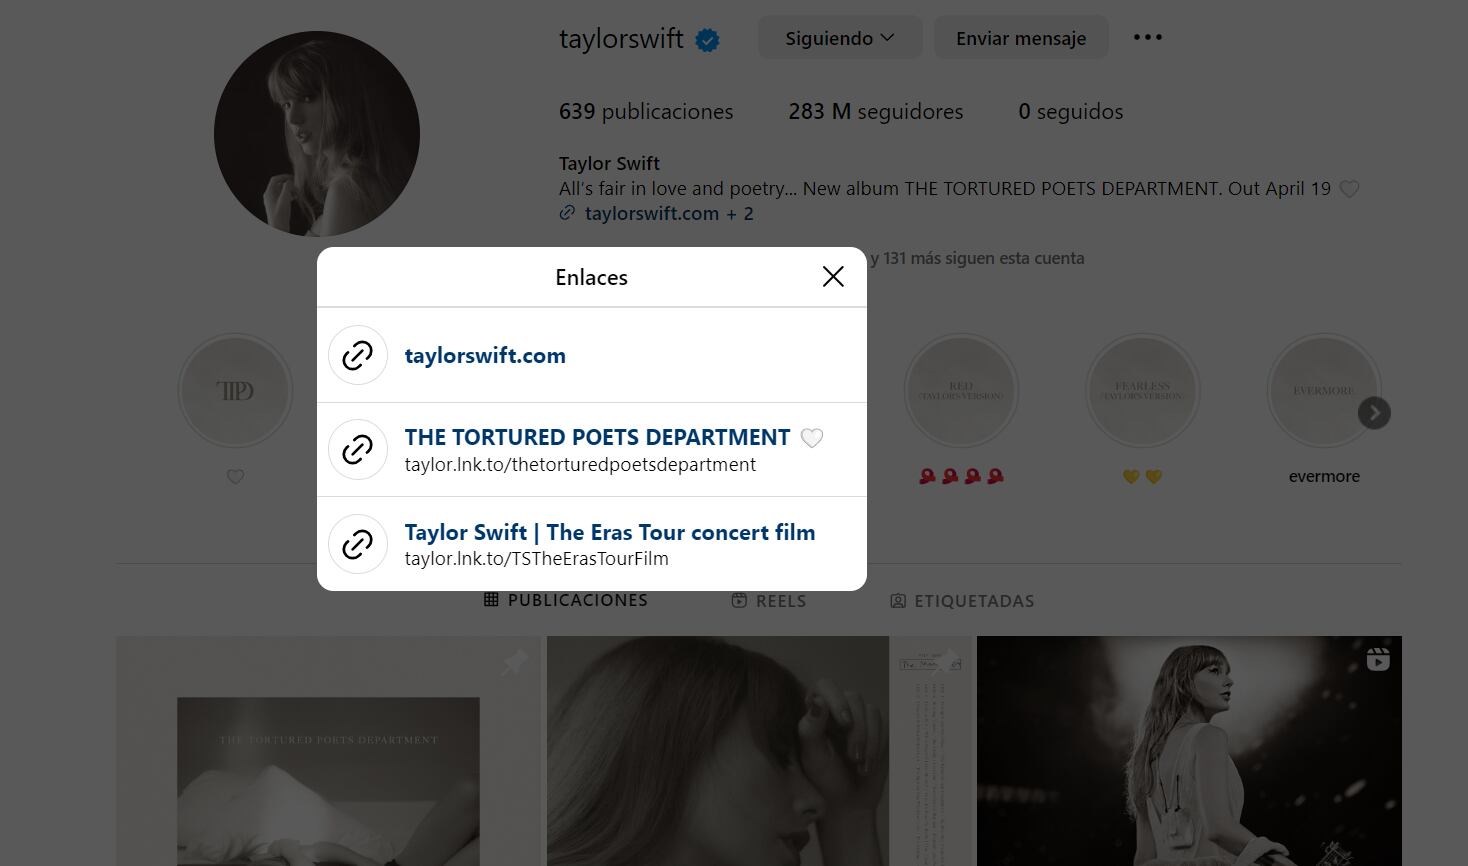 Los artistas suelen dar todas las actualizaciones sobre sus tours en sus redes. (Instagram: taylorswift)